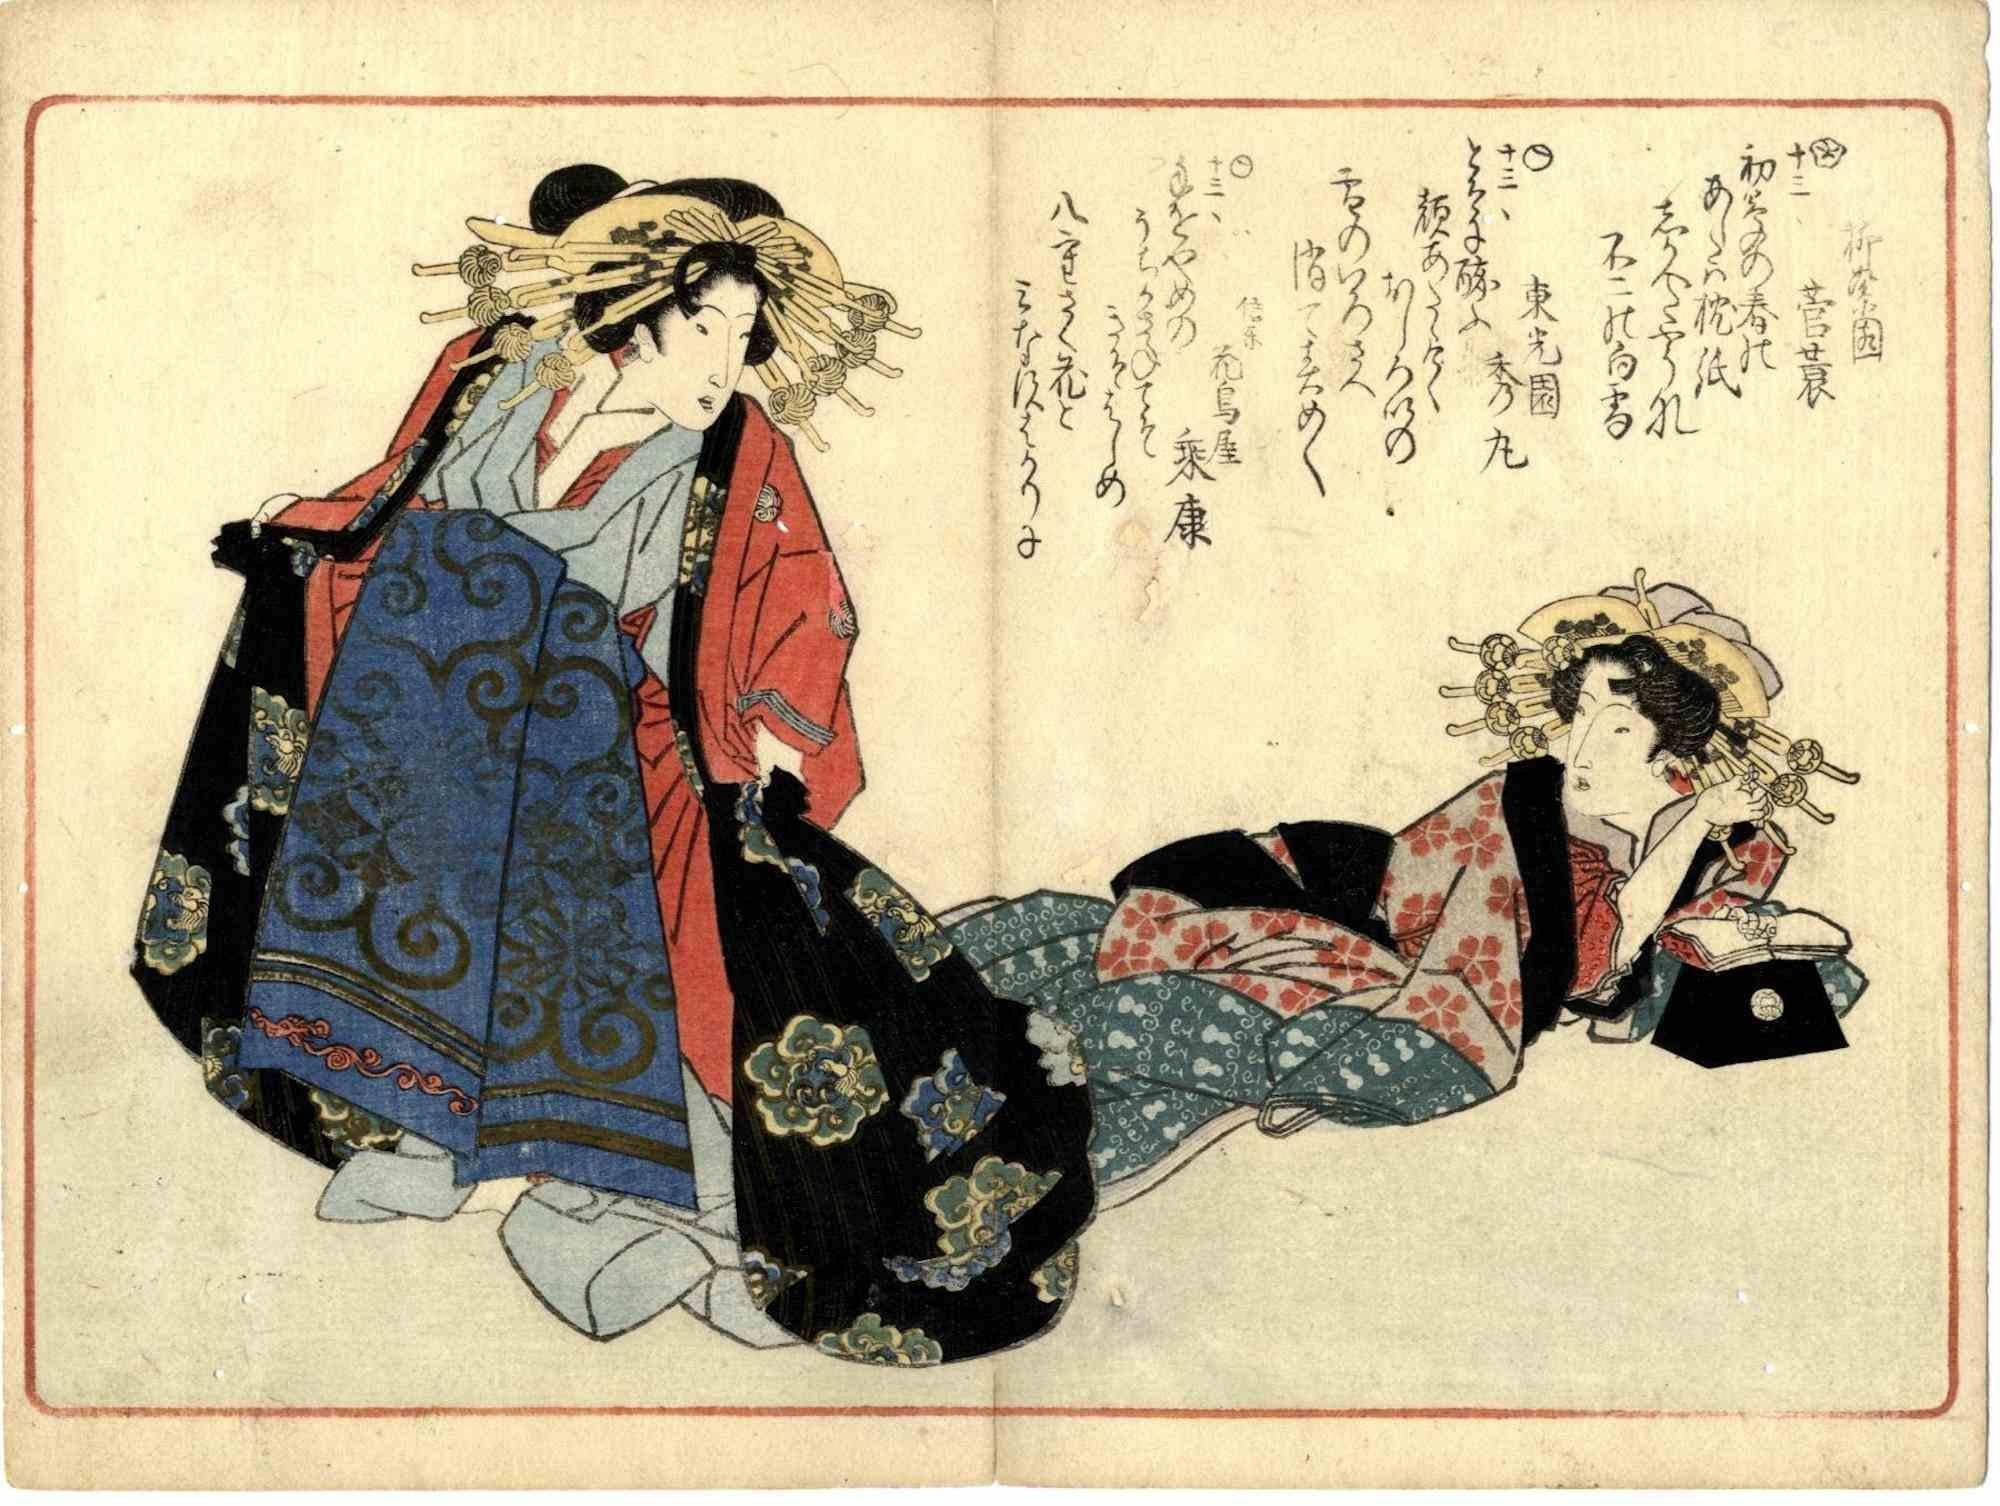 Une myriade de poèmes Kyoka Bijinga est une œuvre d'art moderne originale réalisée par Yanagawa Shigenobu en 1830.

Impression en noir et blanc. Extrait de l'album rare "Kyoka momochidori" (Une myriade de poèmes de Kyoka). Deux courtisanes de haut